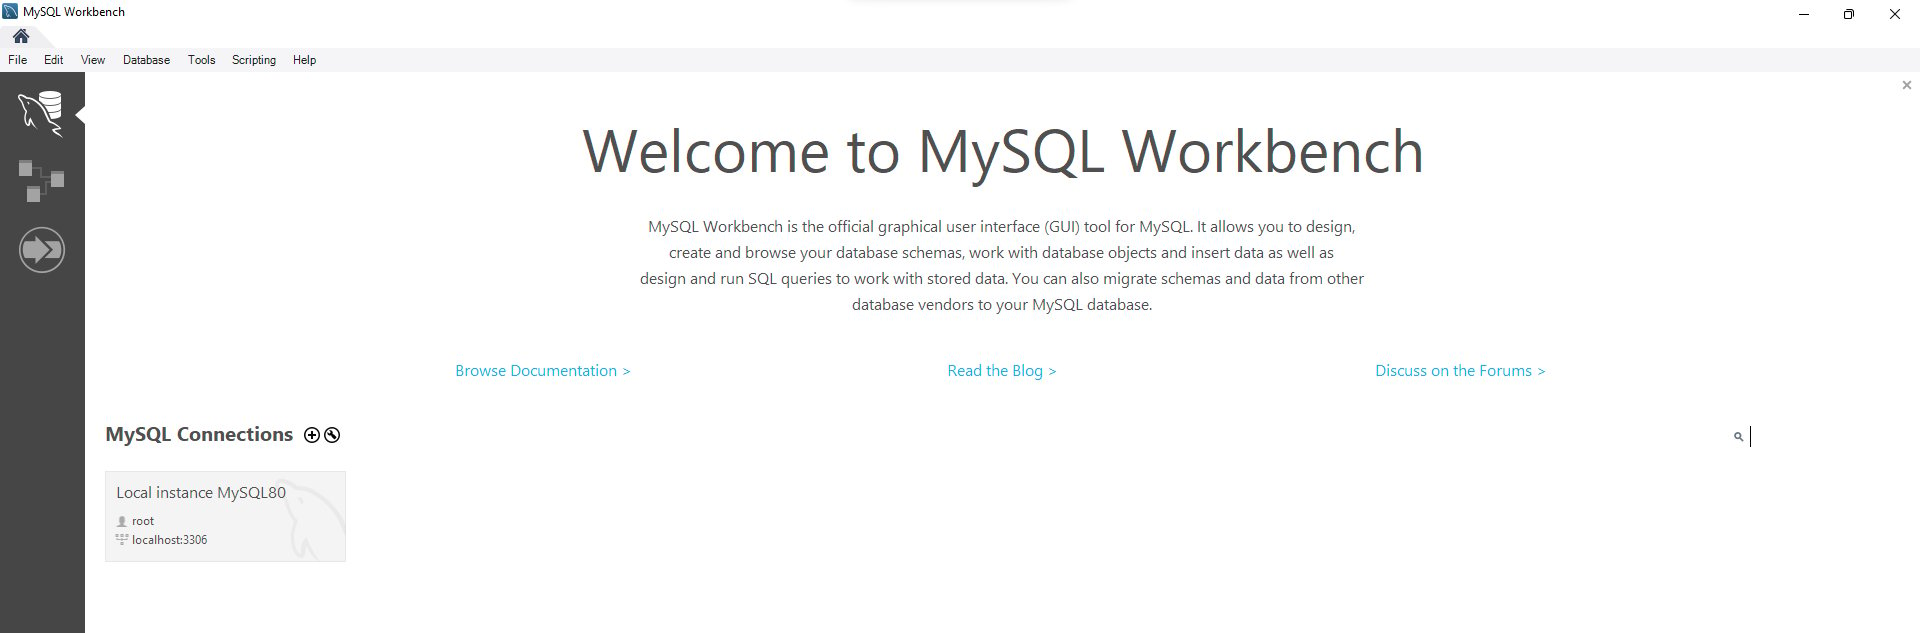 Página inicial do MySQL Workbench. Na parte superior central da tela temos a frase Welcome to MySQL Workbench. Na lateral esquerda temos um faixa cinza com um menu de opções selecionáveis.